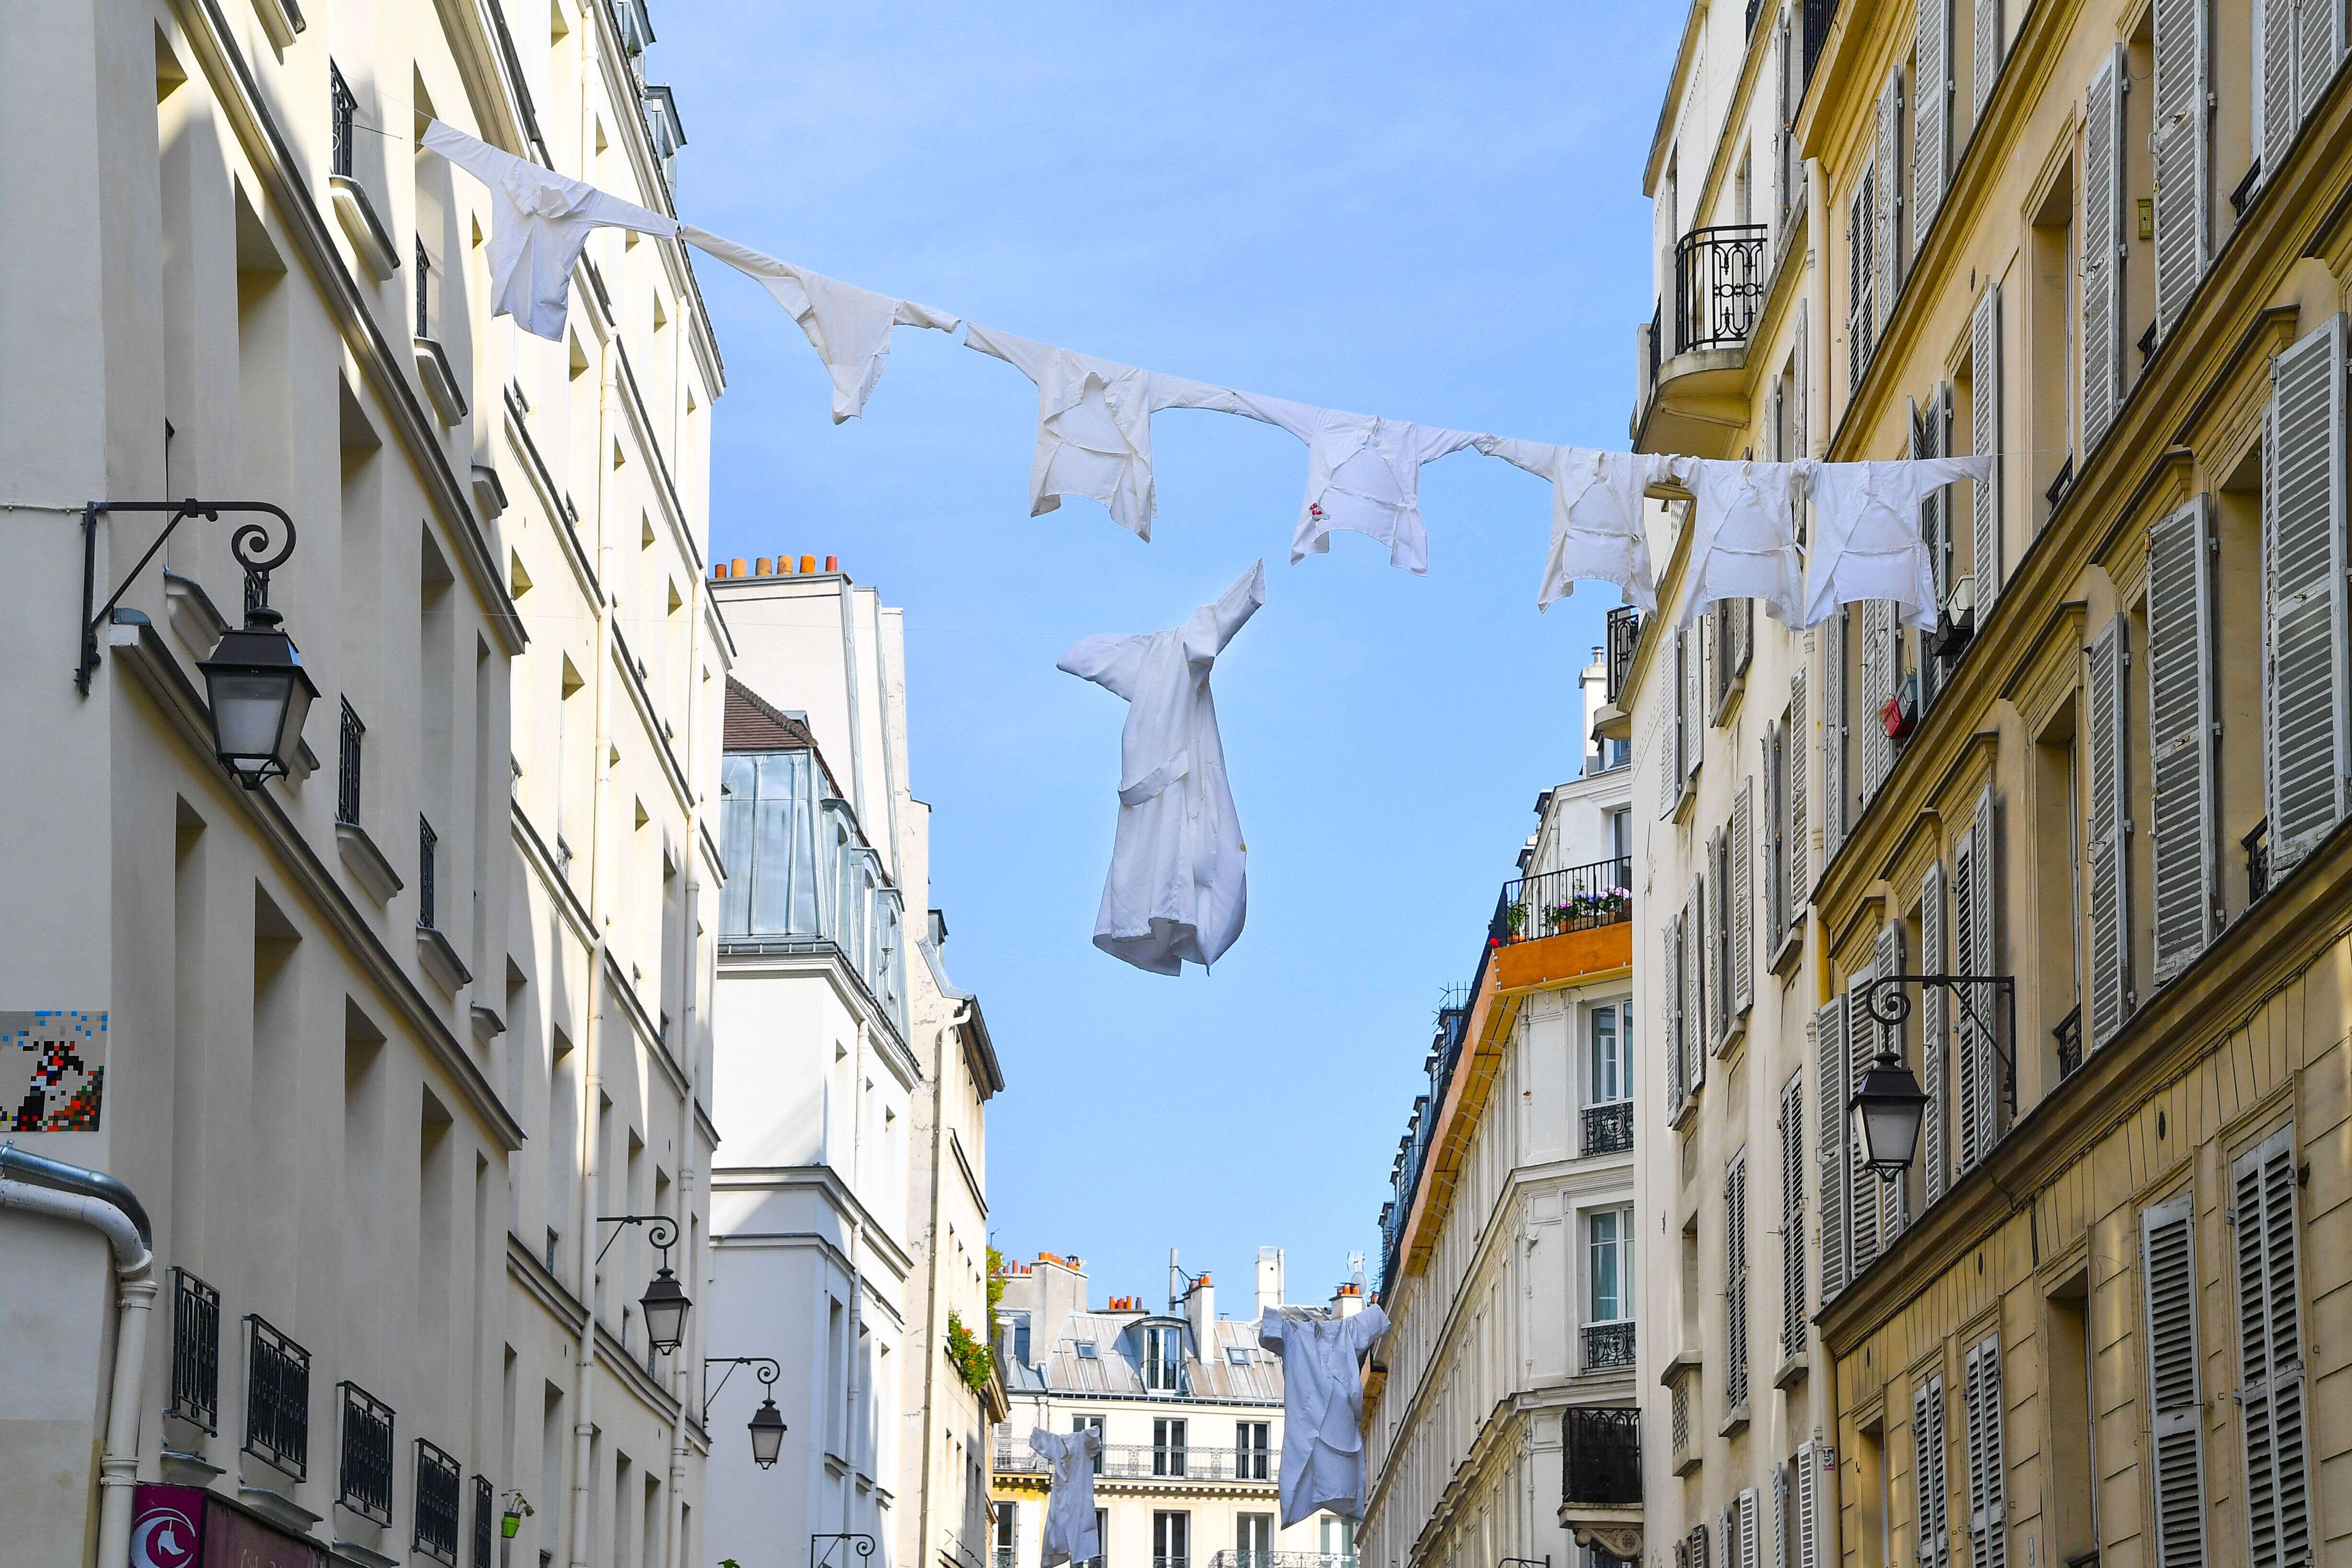 En hommage aux soignants, des blouses sont suspendues dans la rue durant le confinement, à Paris le 20 avril 2020.